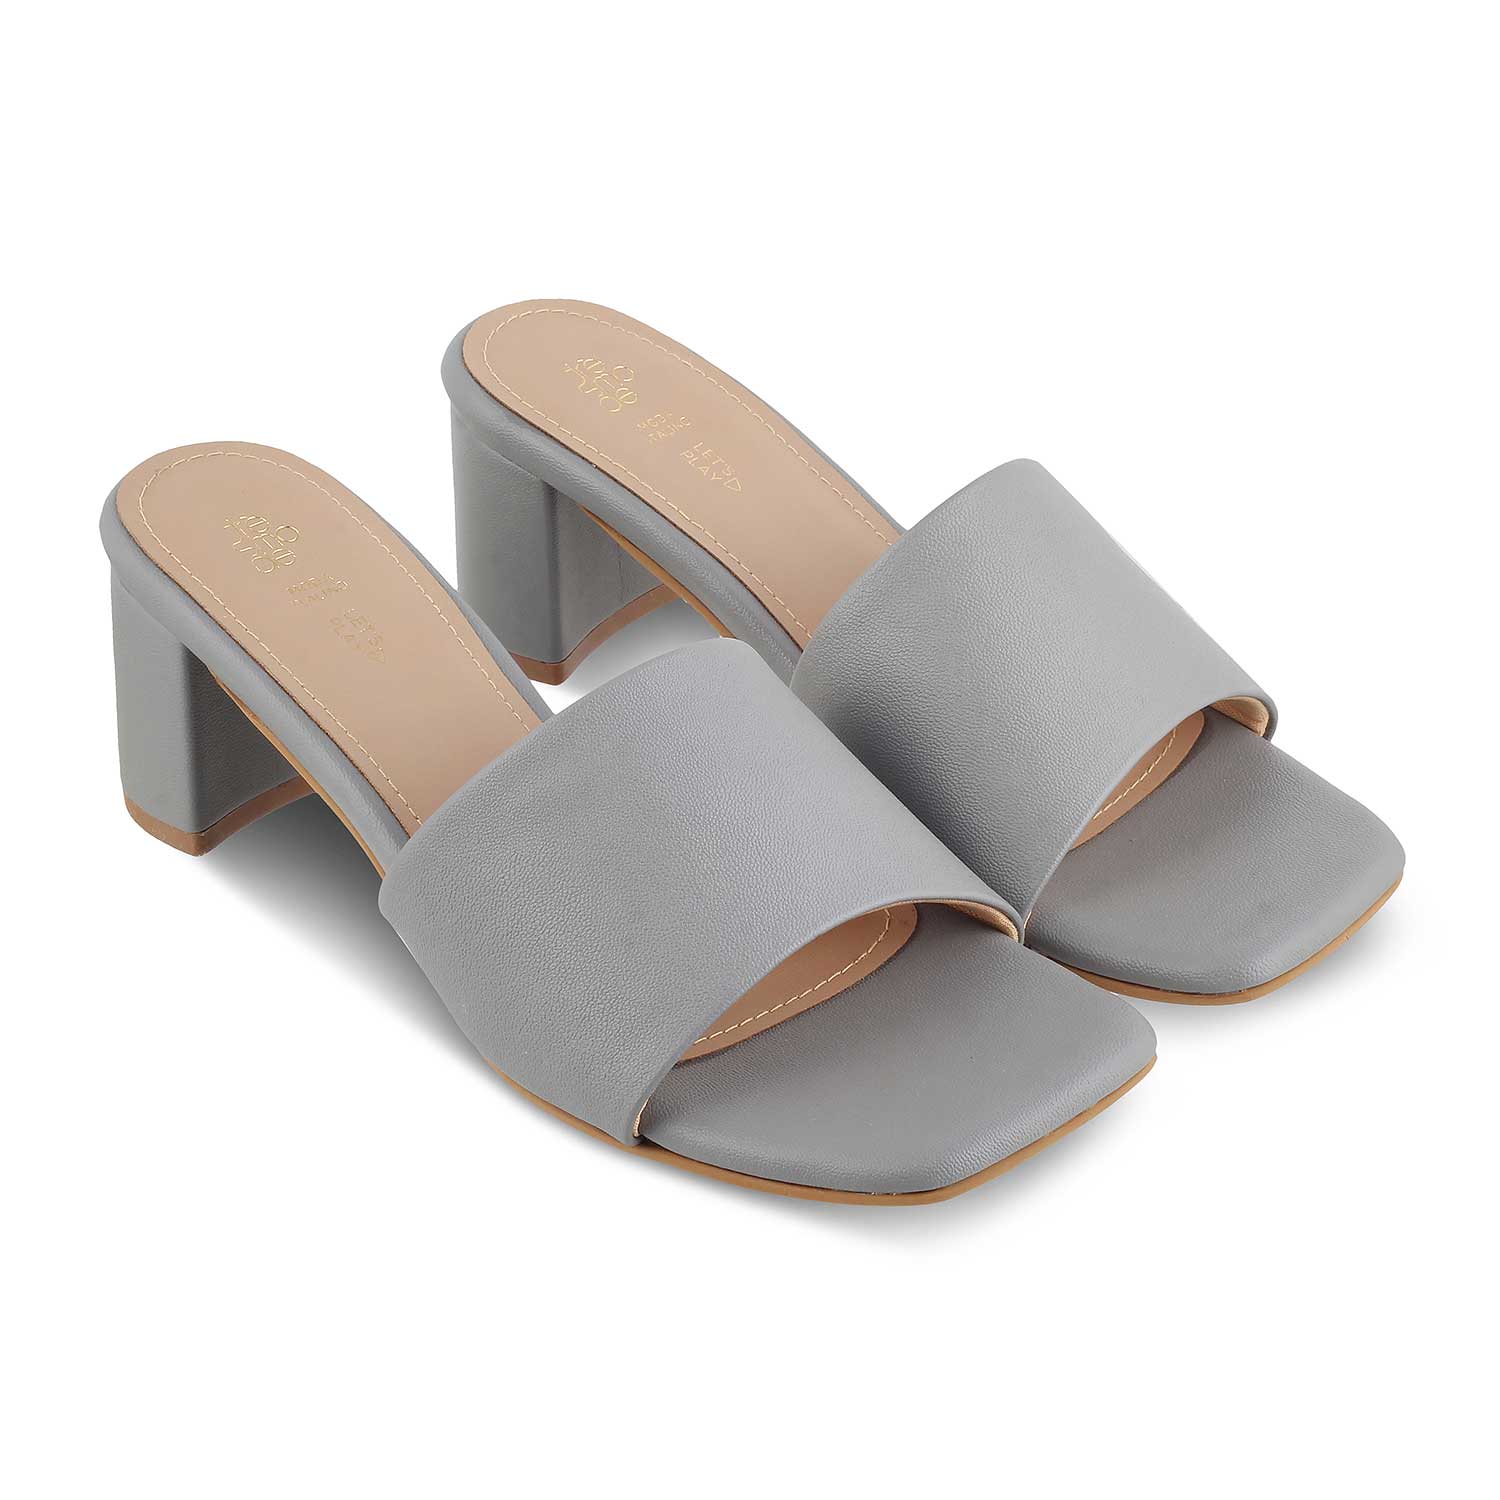 The Barie Grey Women's Casual Block Heel Sandals Tresmode